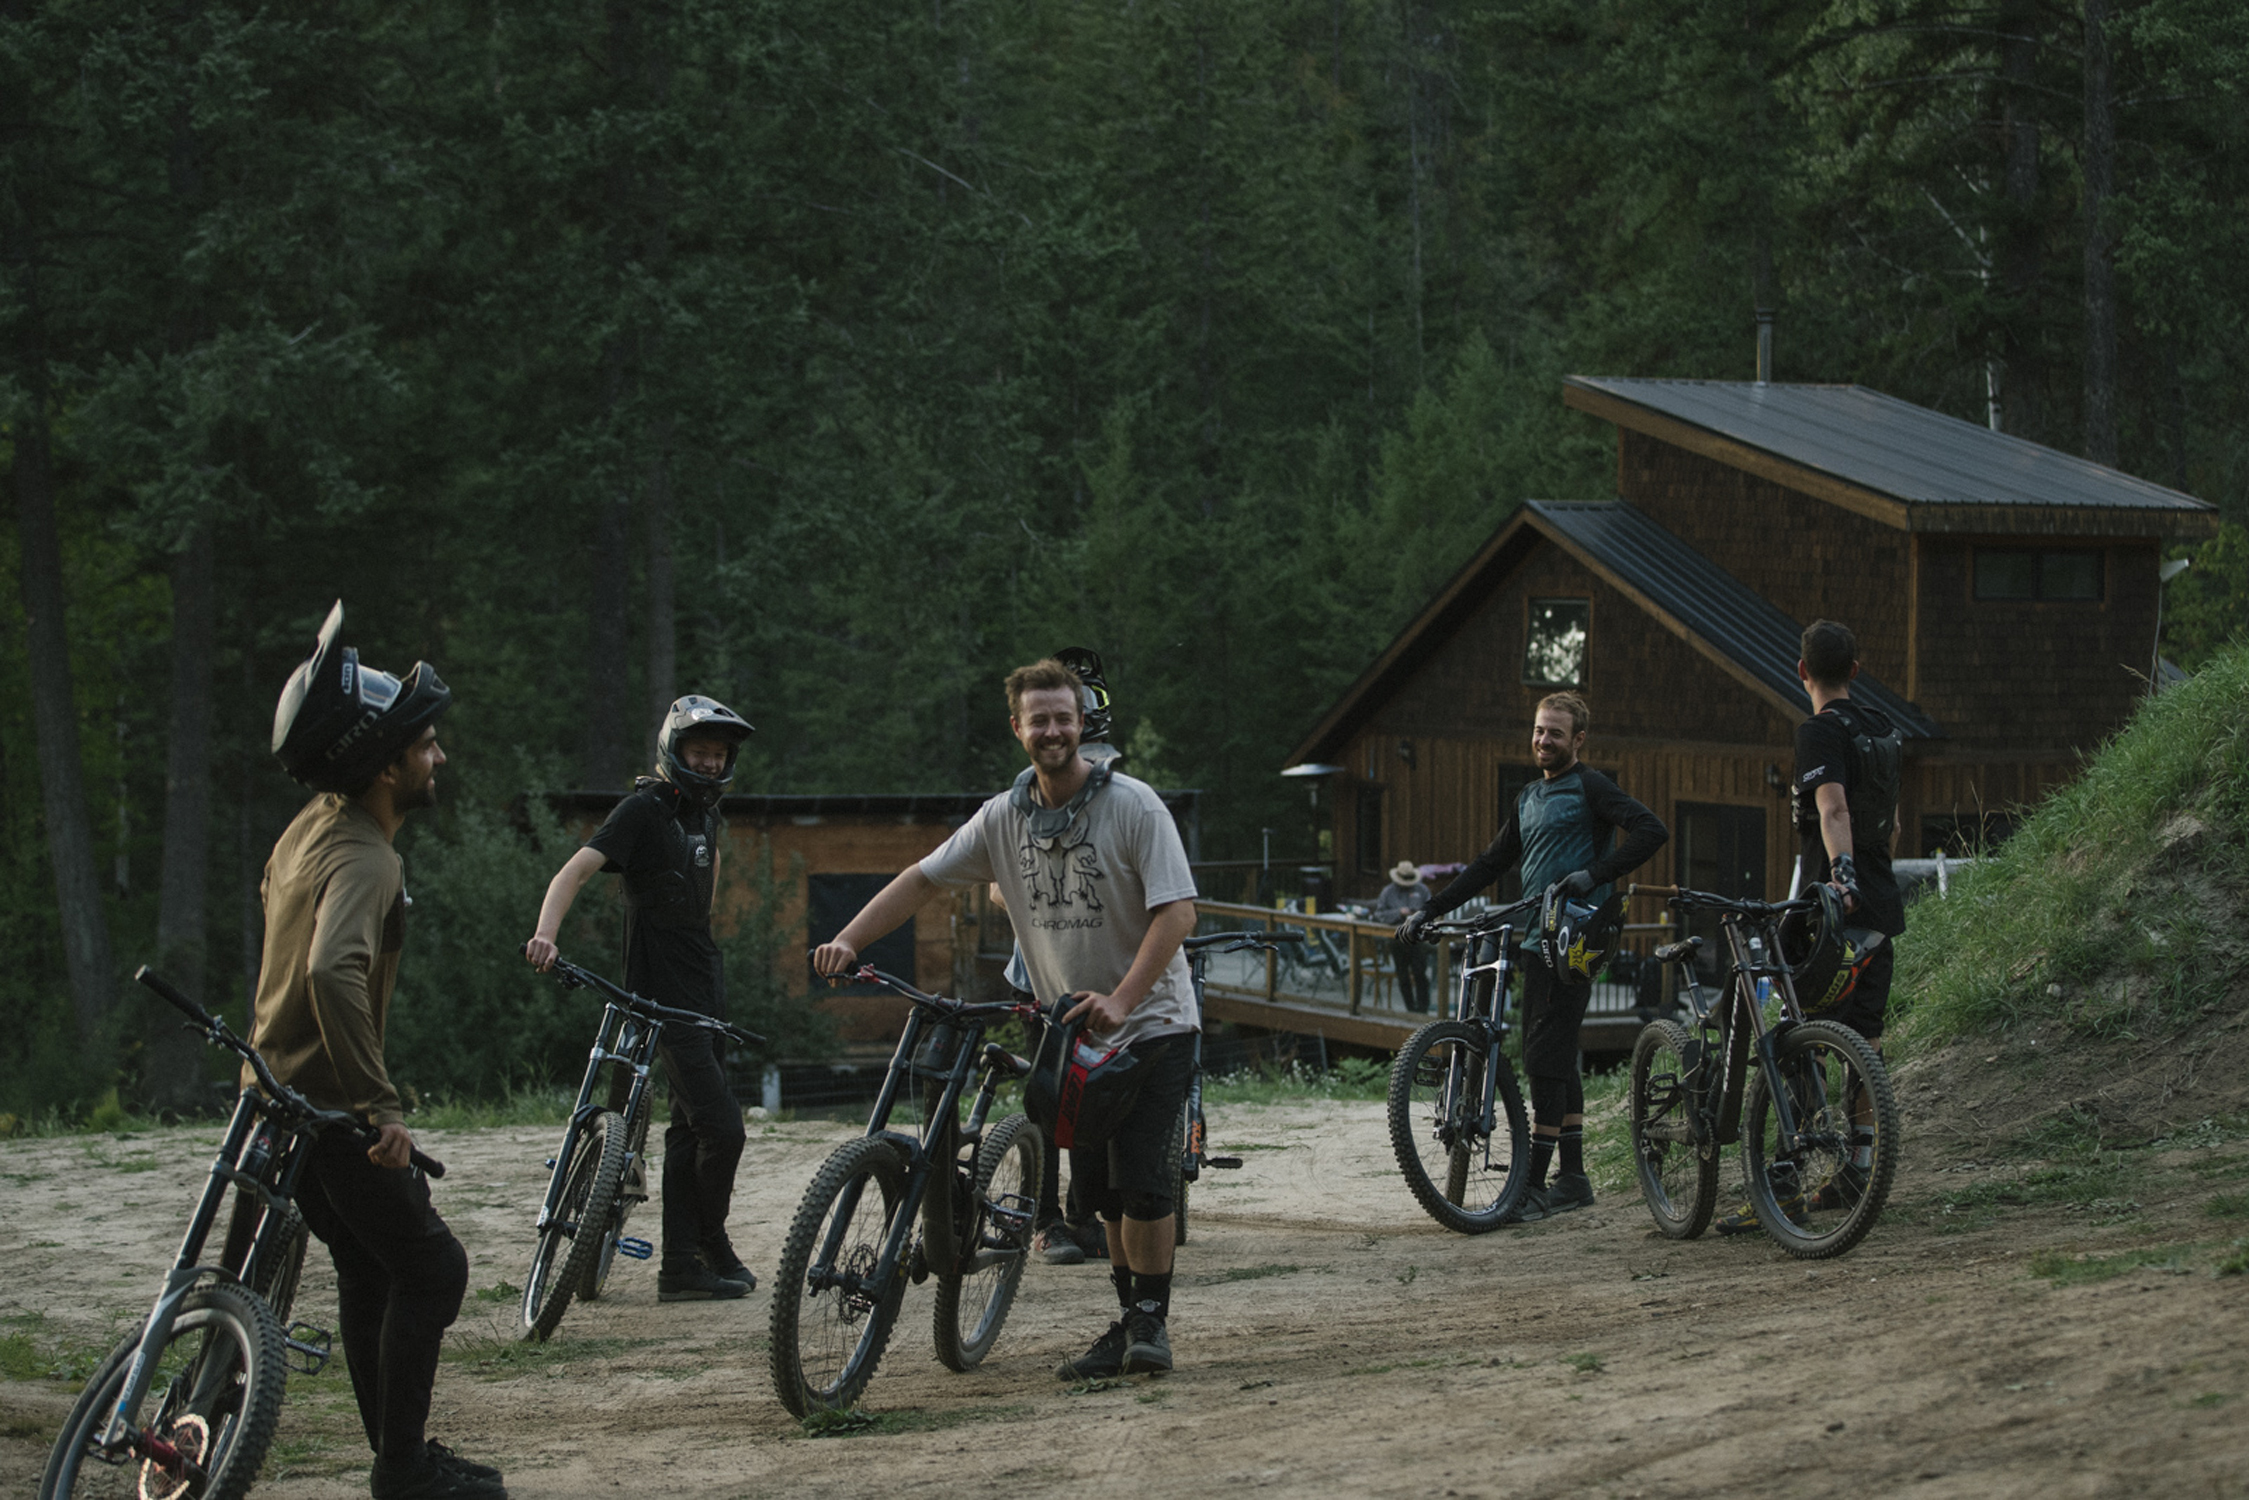 en gruppe mountainbikere kører på ramperne ved Kurts hus